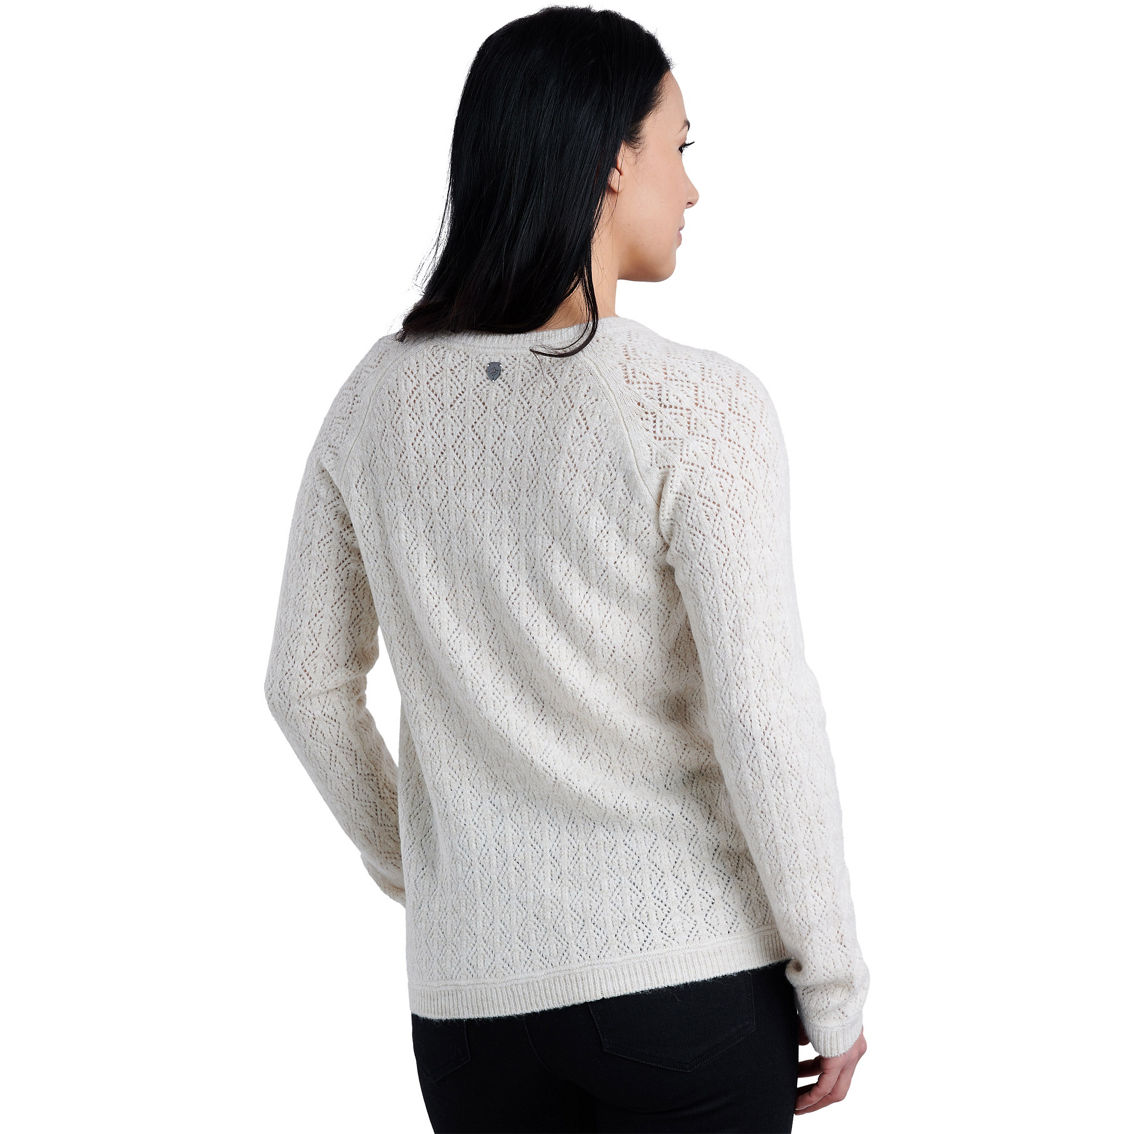 Kuhl Sonata Pointelle Sweater - Image 2 of 3